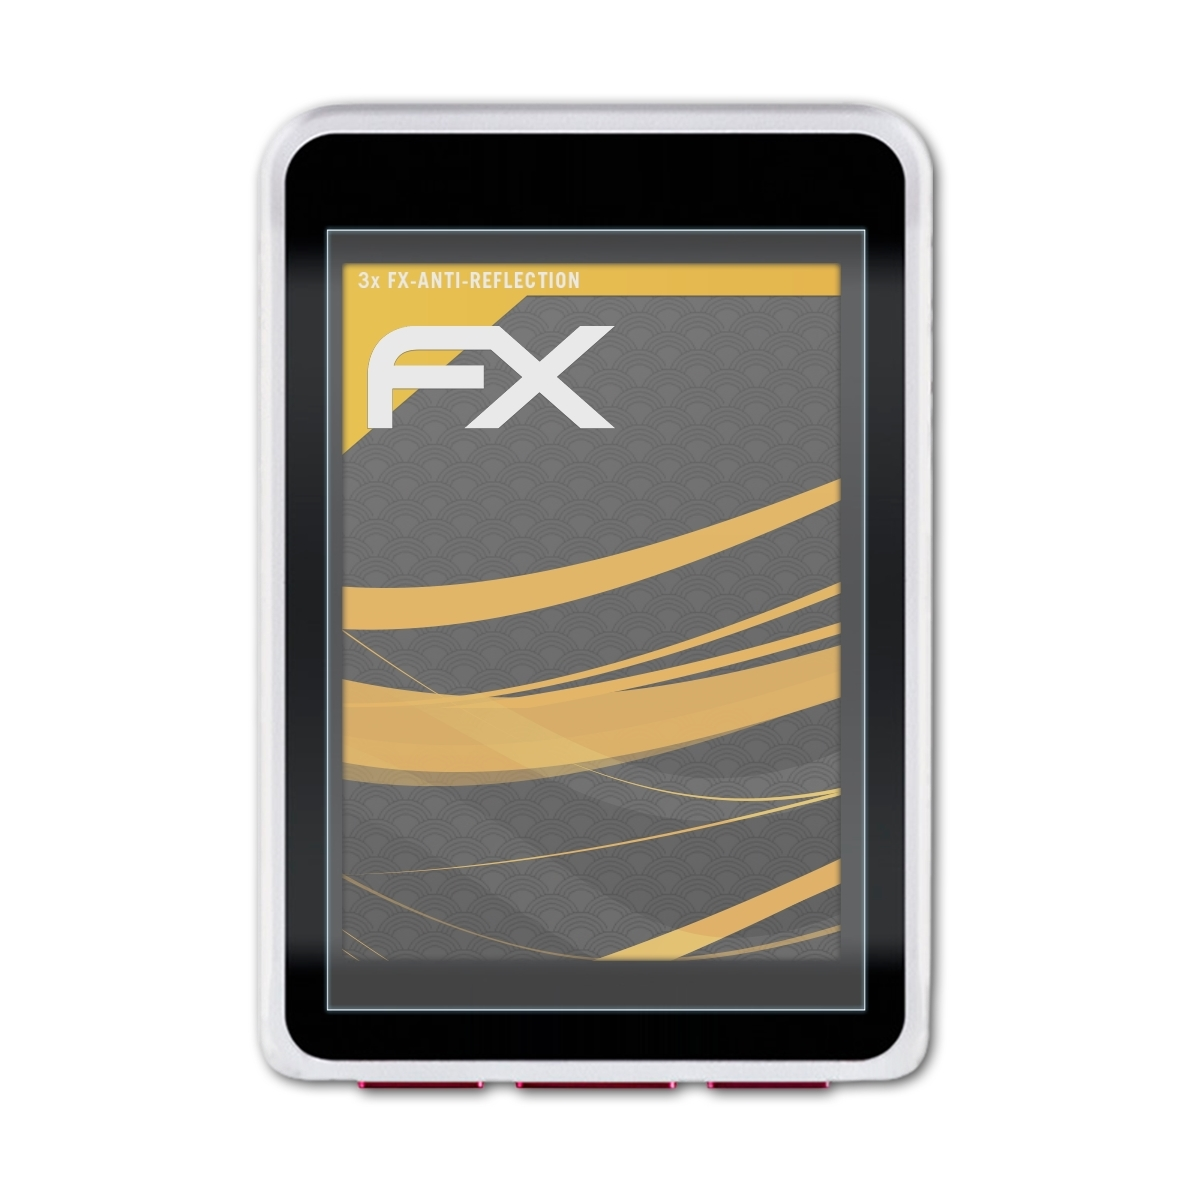 3x FX-Antireflex VDO ATFOLIX GPS) Displayschutz(für M7